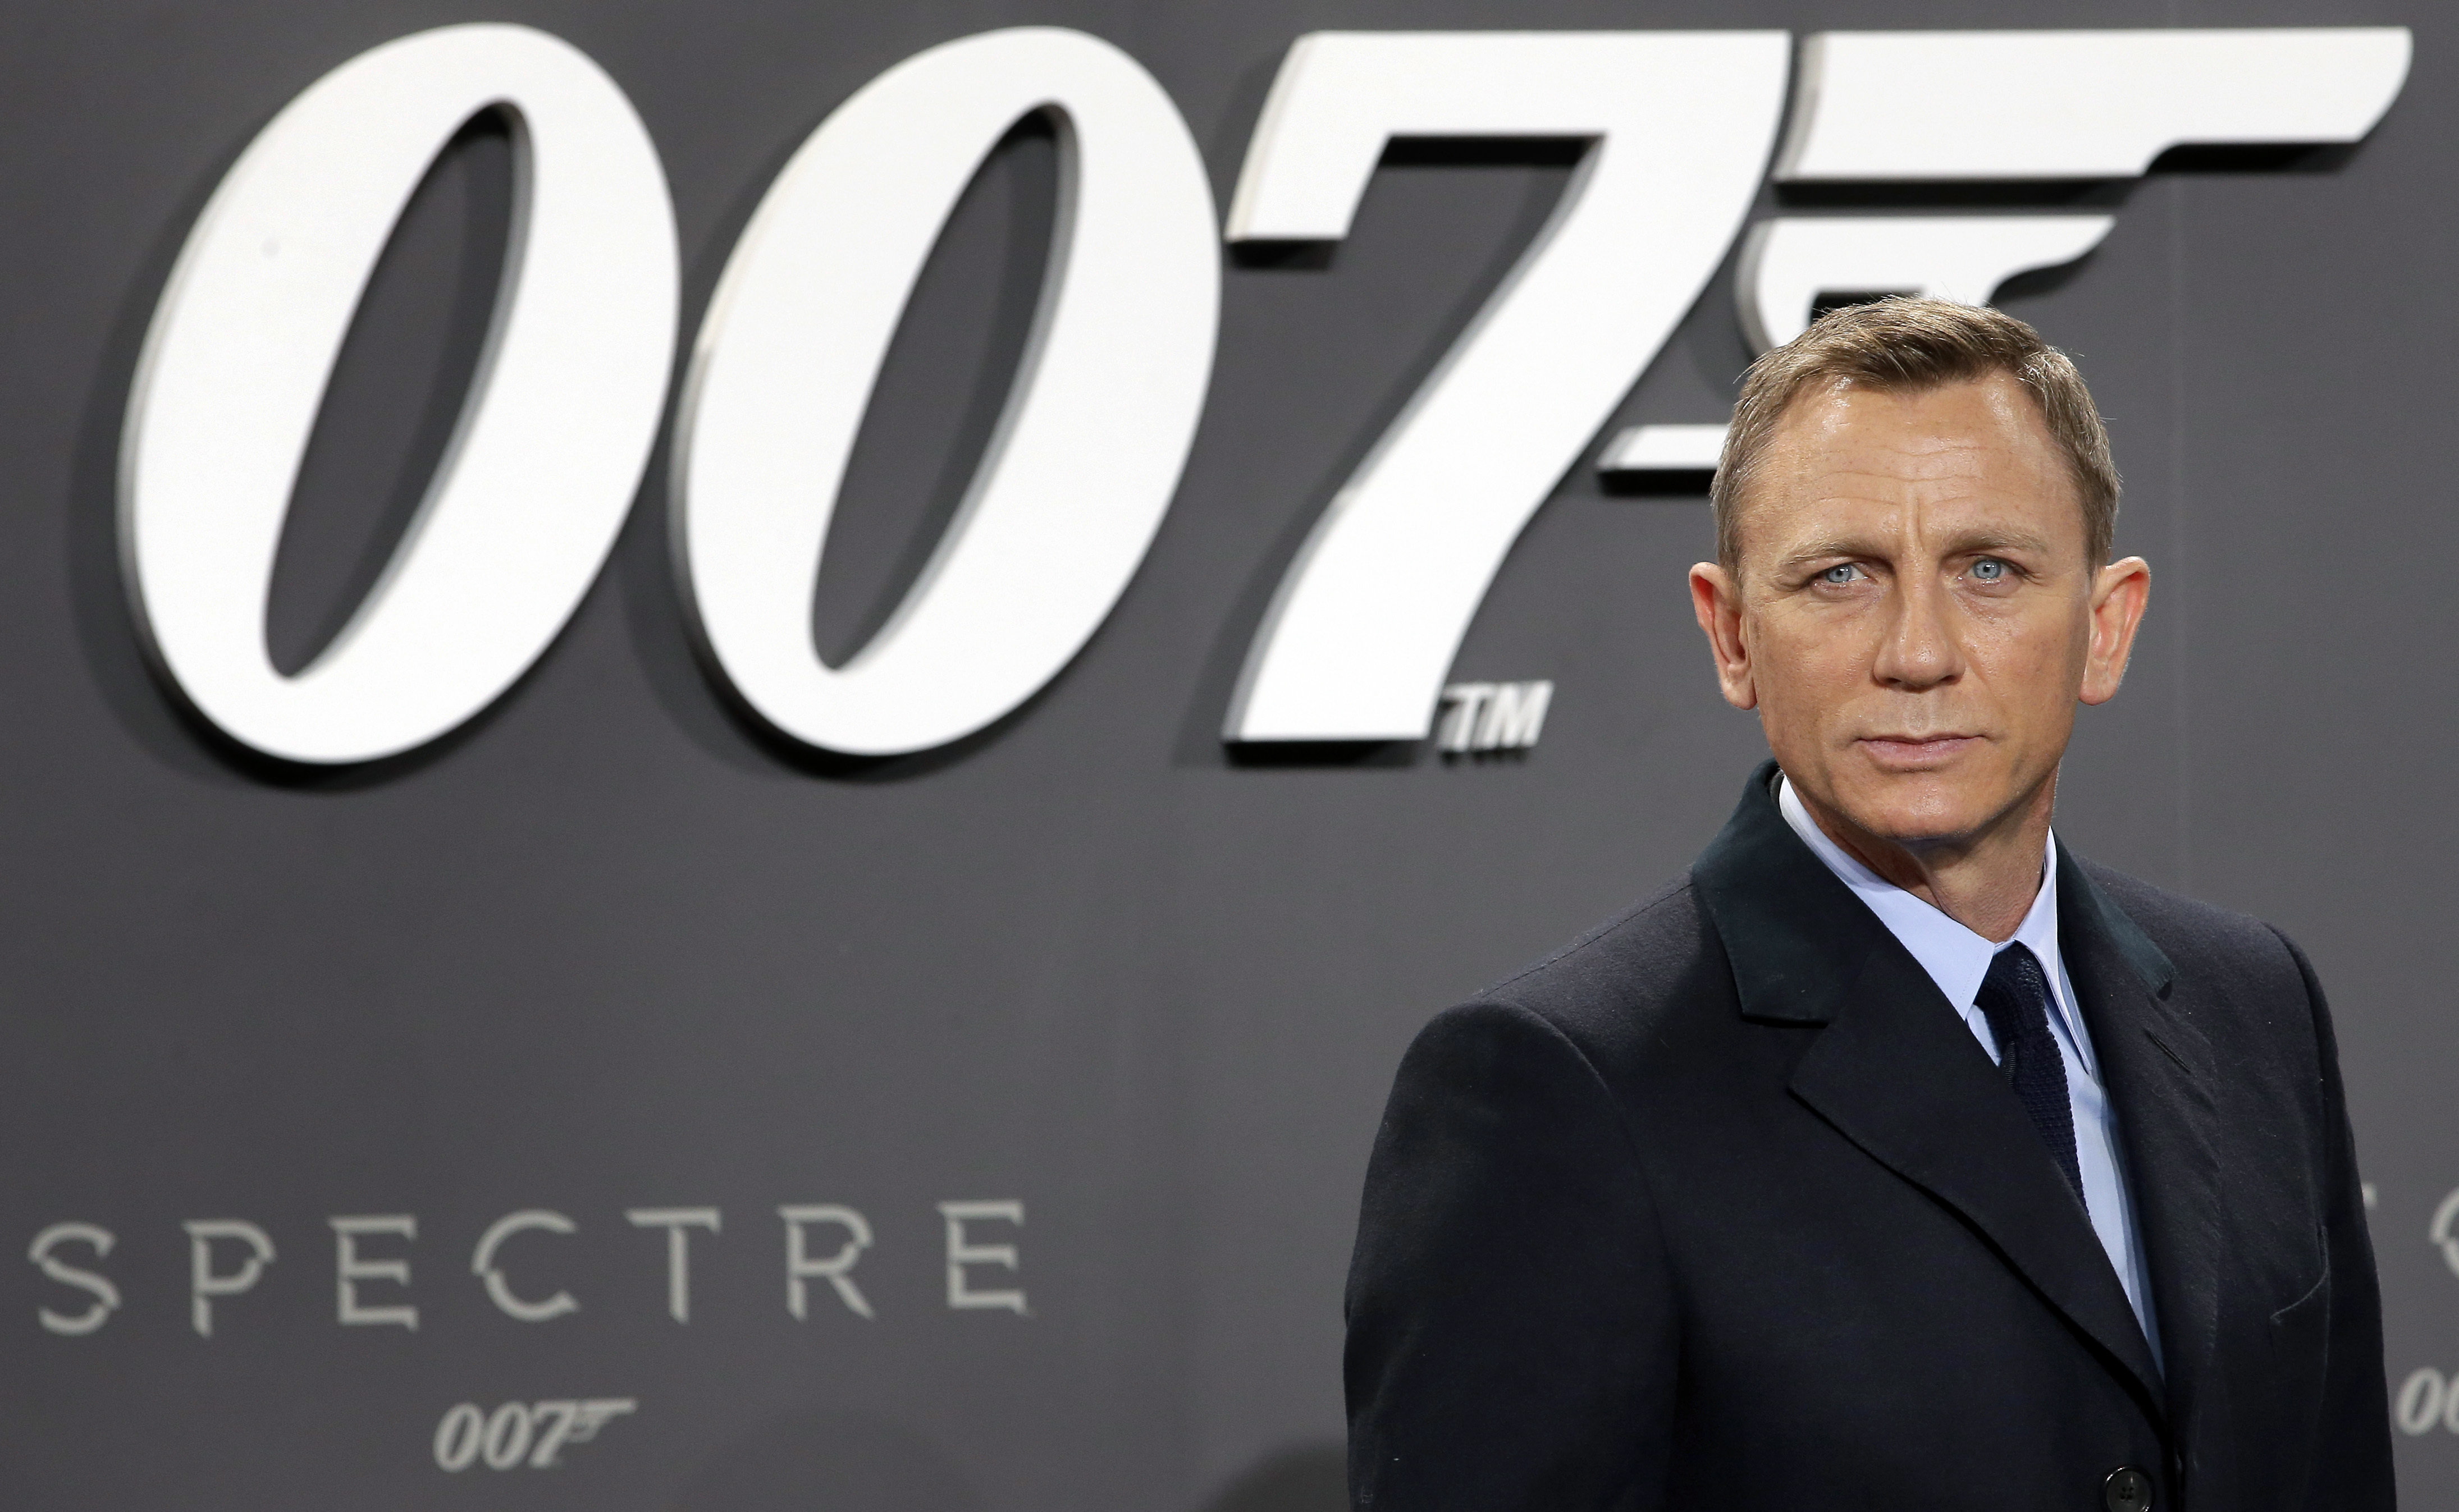 Release of new James Bond film postponed until November